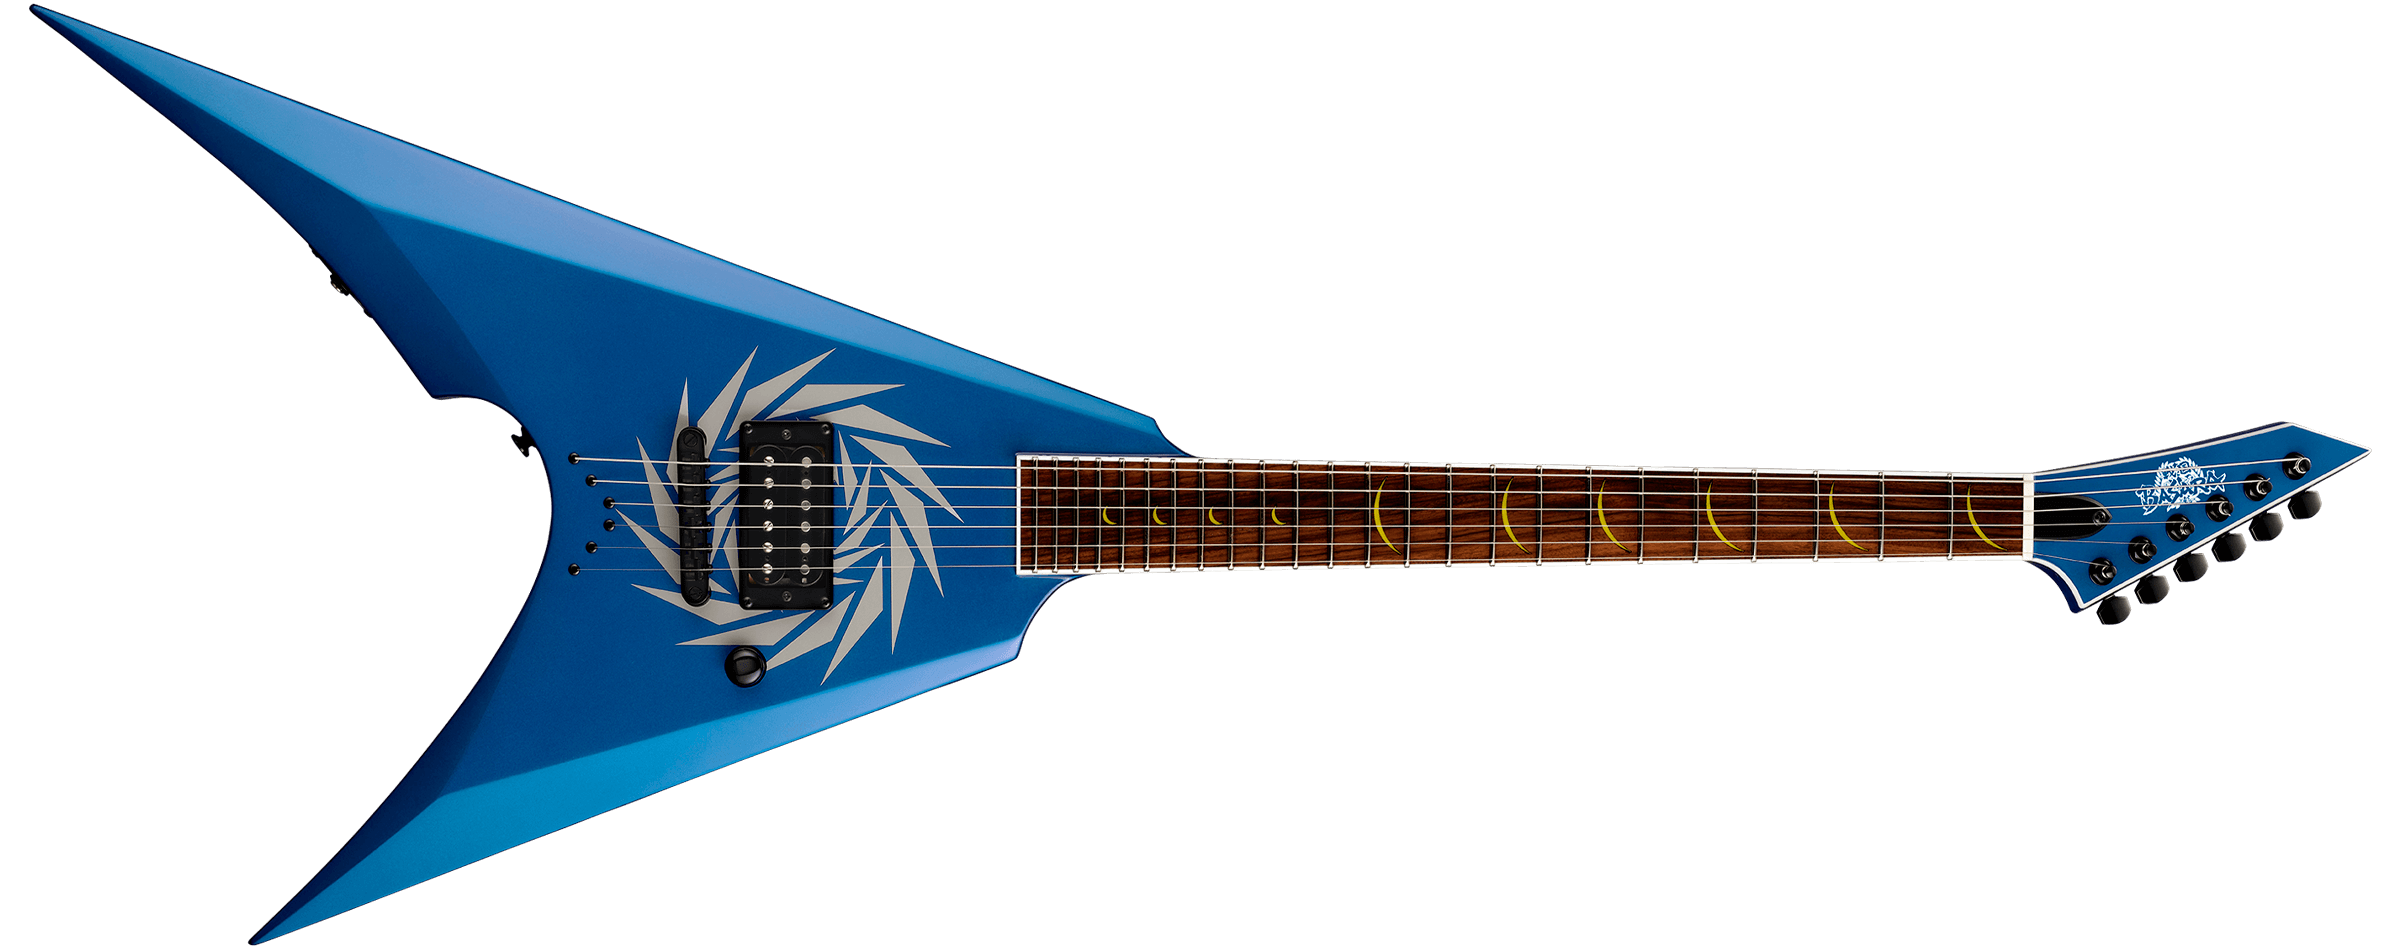 Esp 戦国basara コラボレーションギター 発売 Esp Guitars